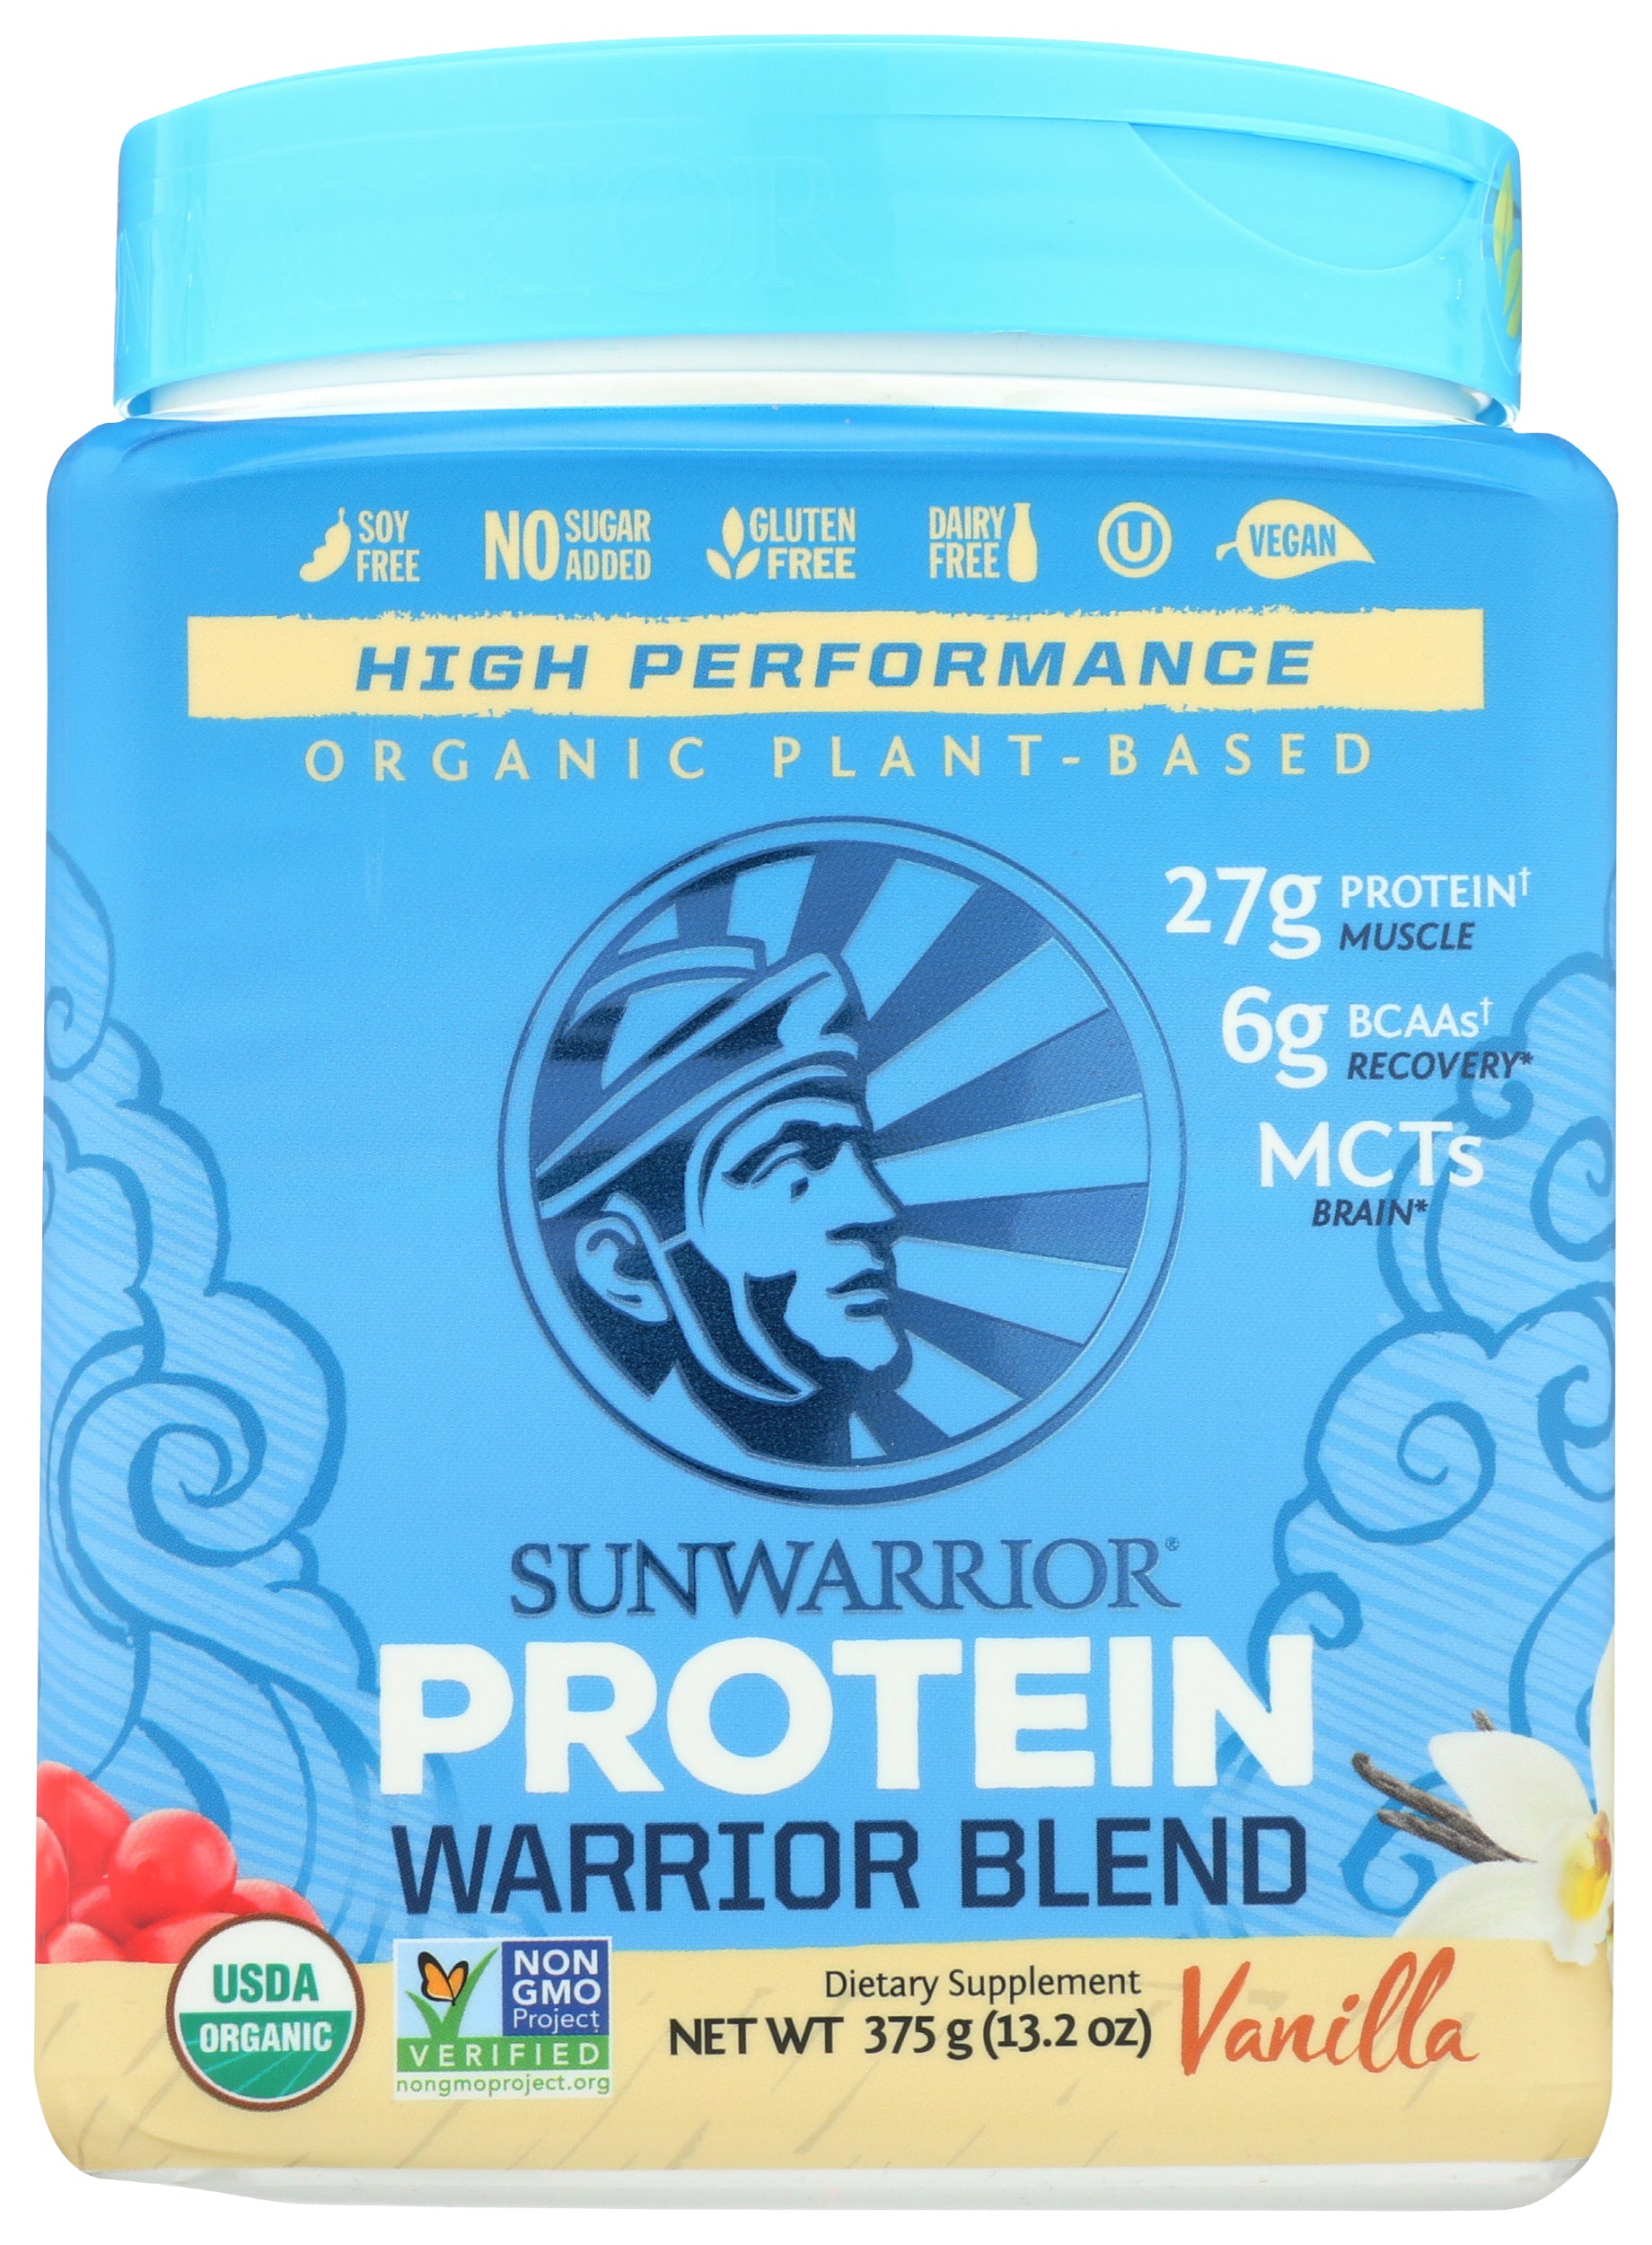 Sunwarrior Protein Powder Warrior Blend Vanilla Flavor 375g Front of Bottle